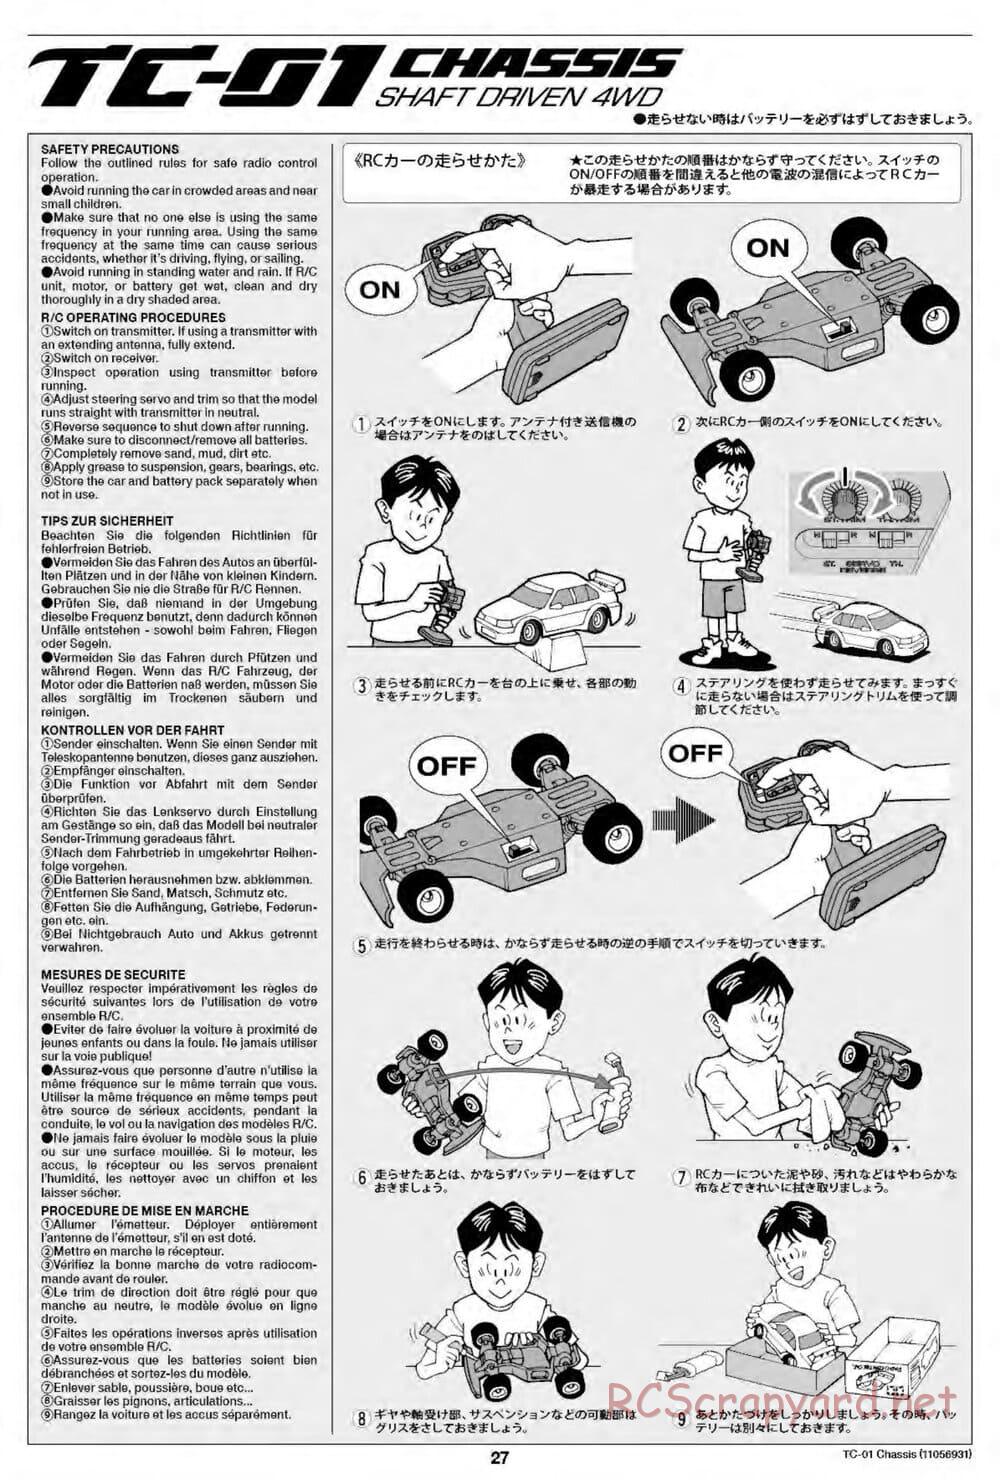 Tamiya - TC-01 Chassis - Manual - Page 27